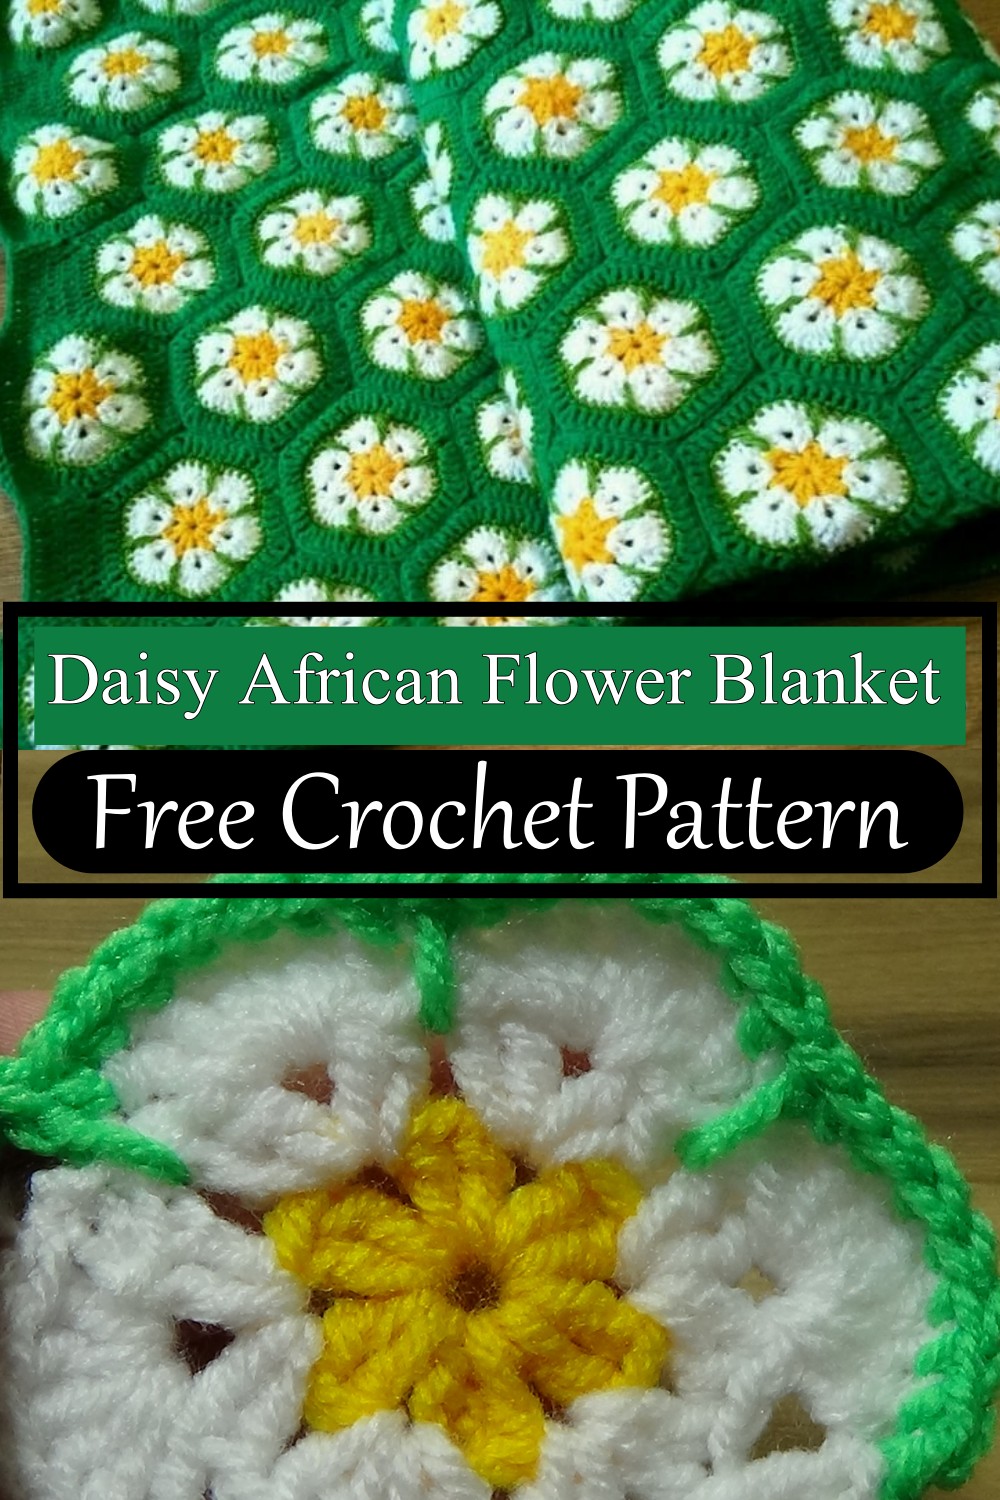 Daisy African Flower Blanket